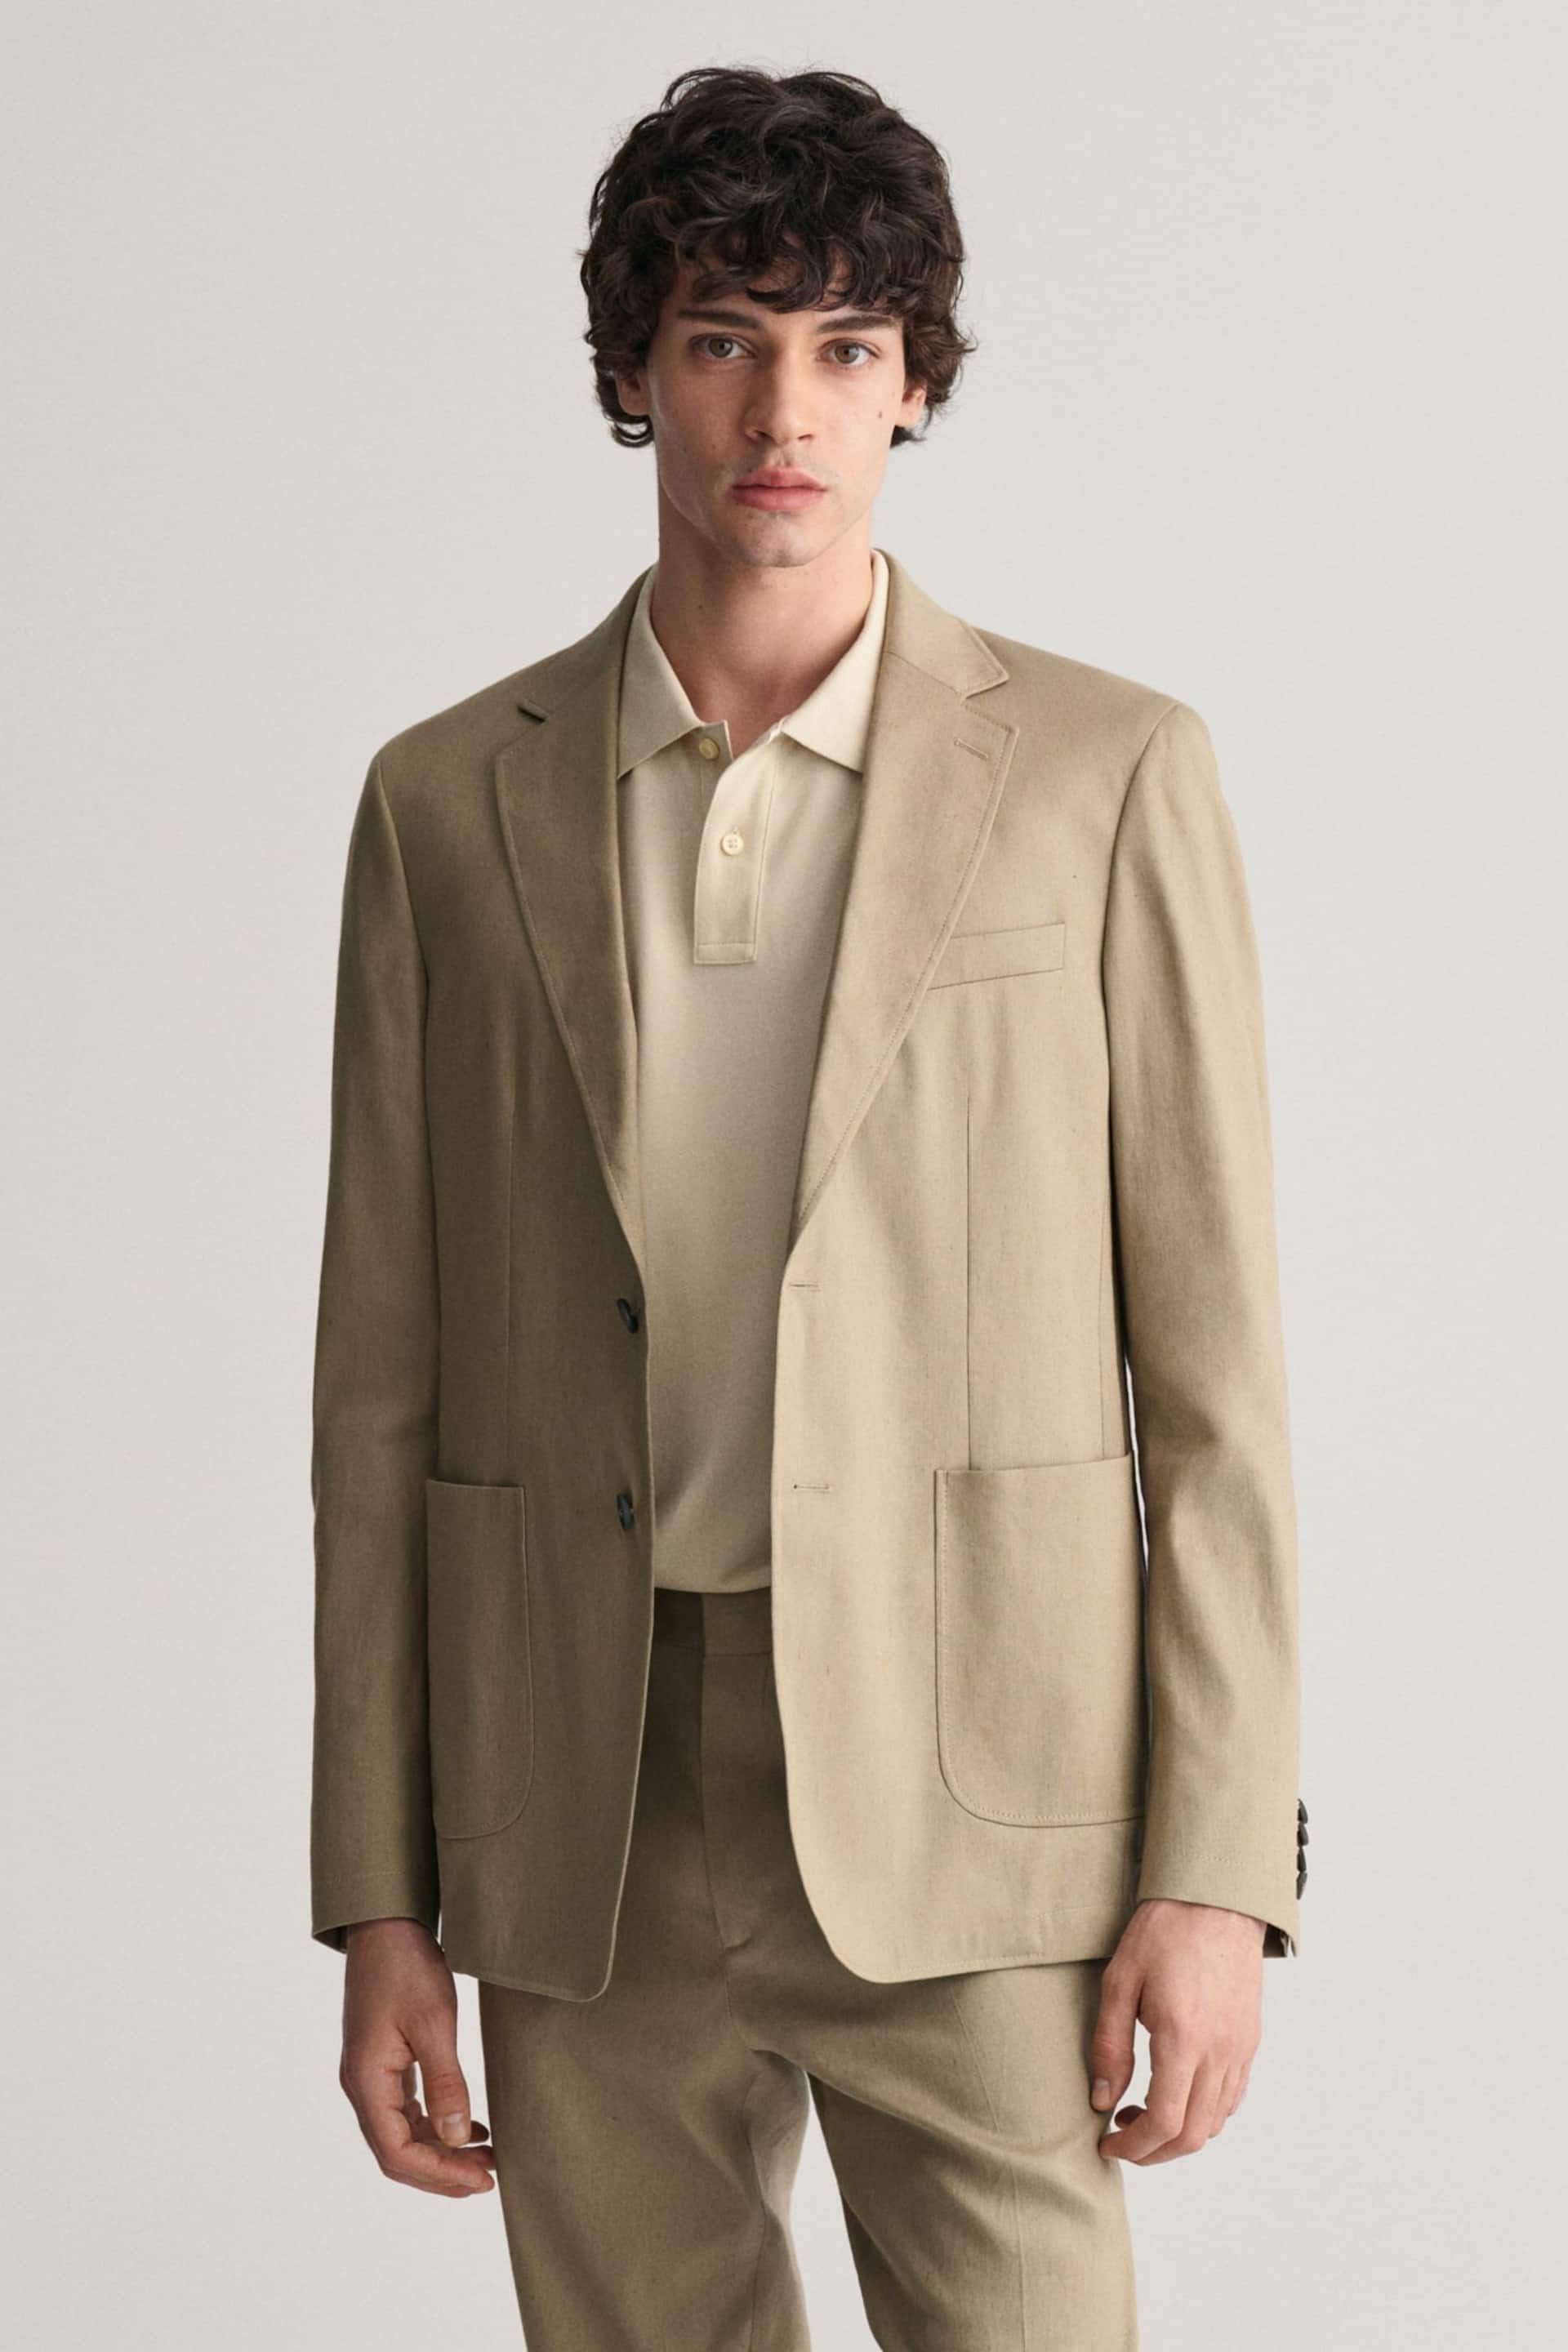 GANT Brown Slim Fit Cotton Linen Blazer - Image 1 of 6